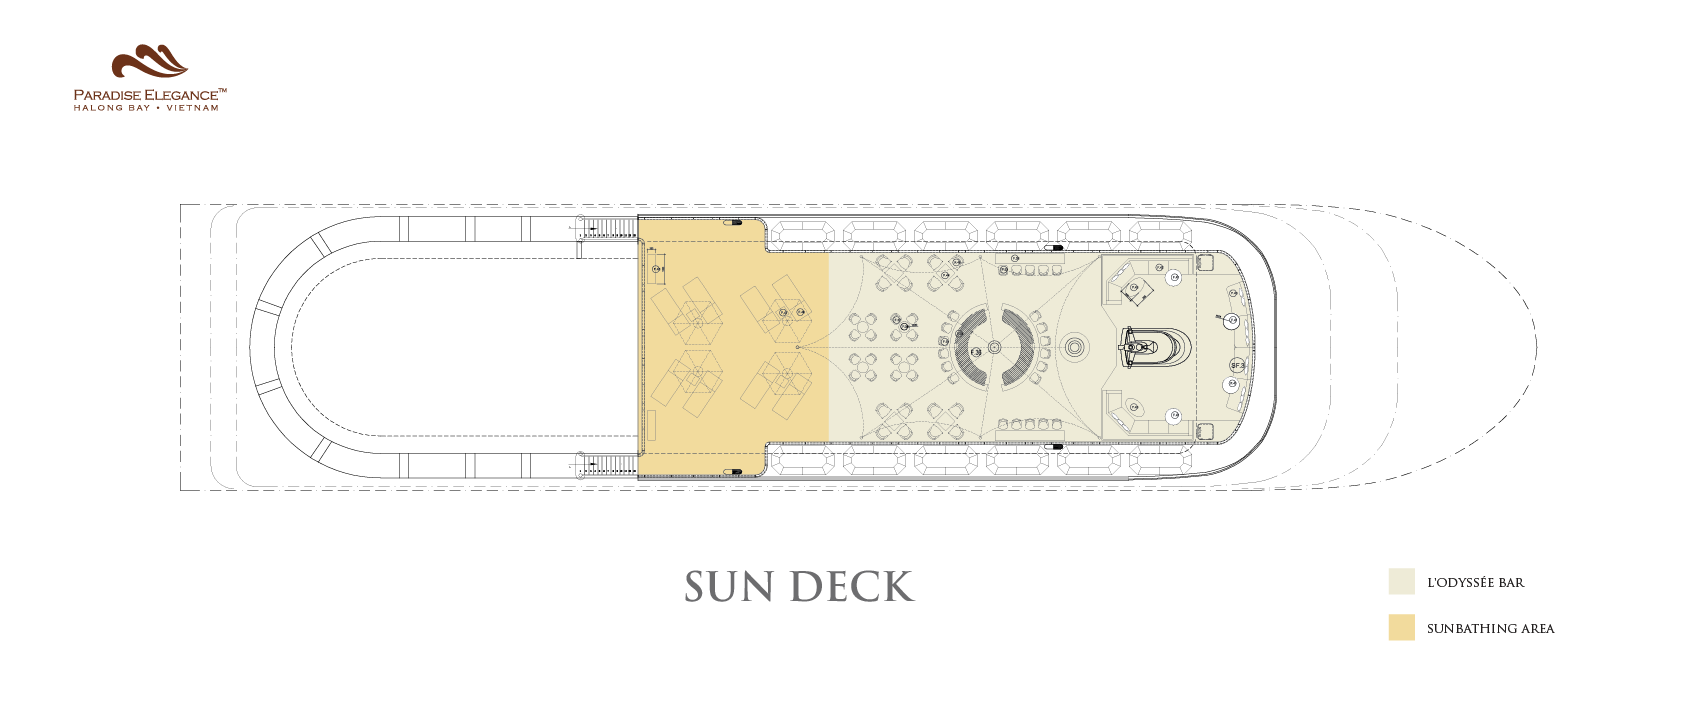 Paradise Elegance Deck Plans